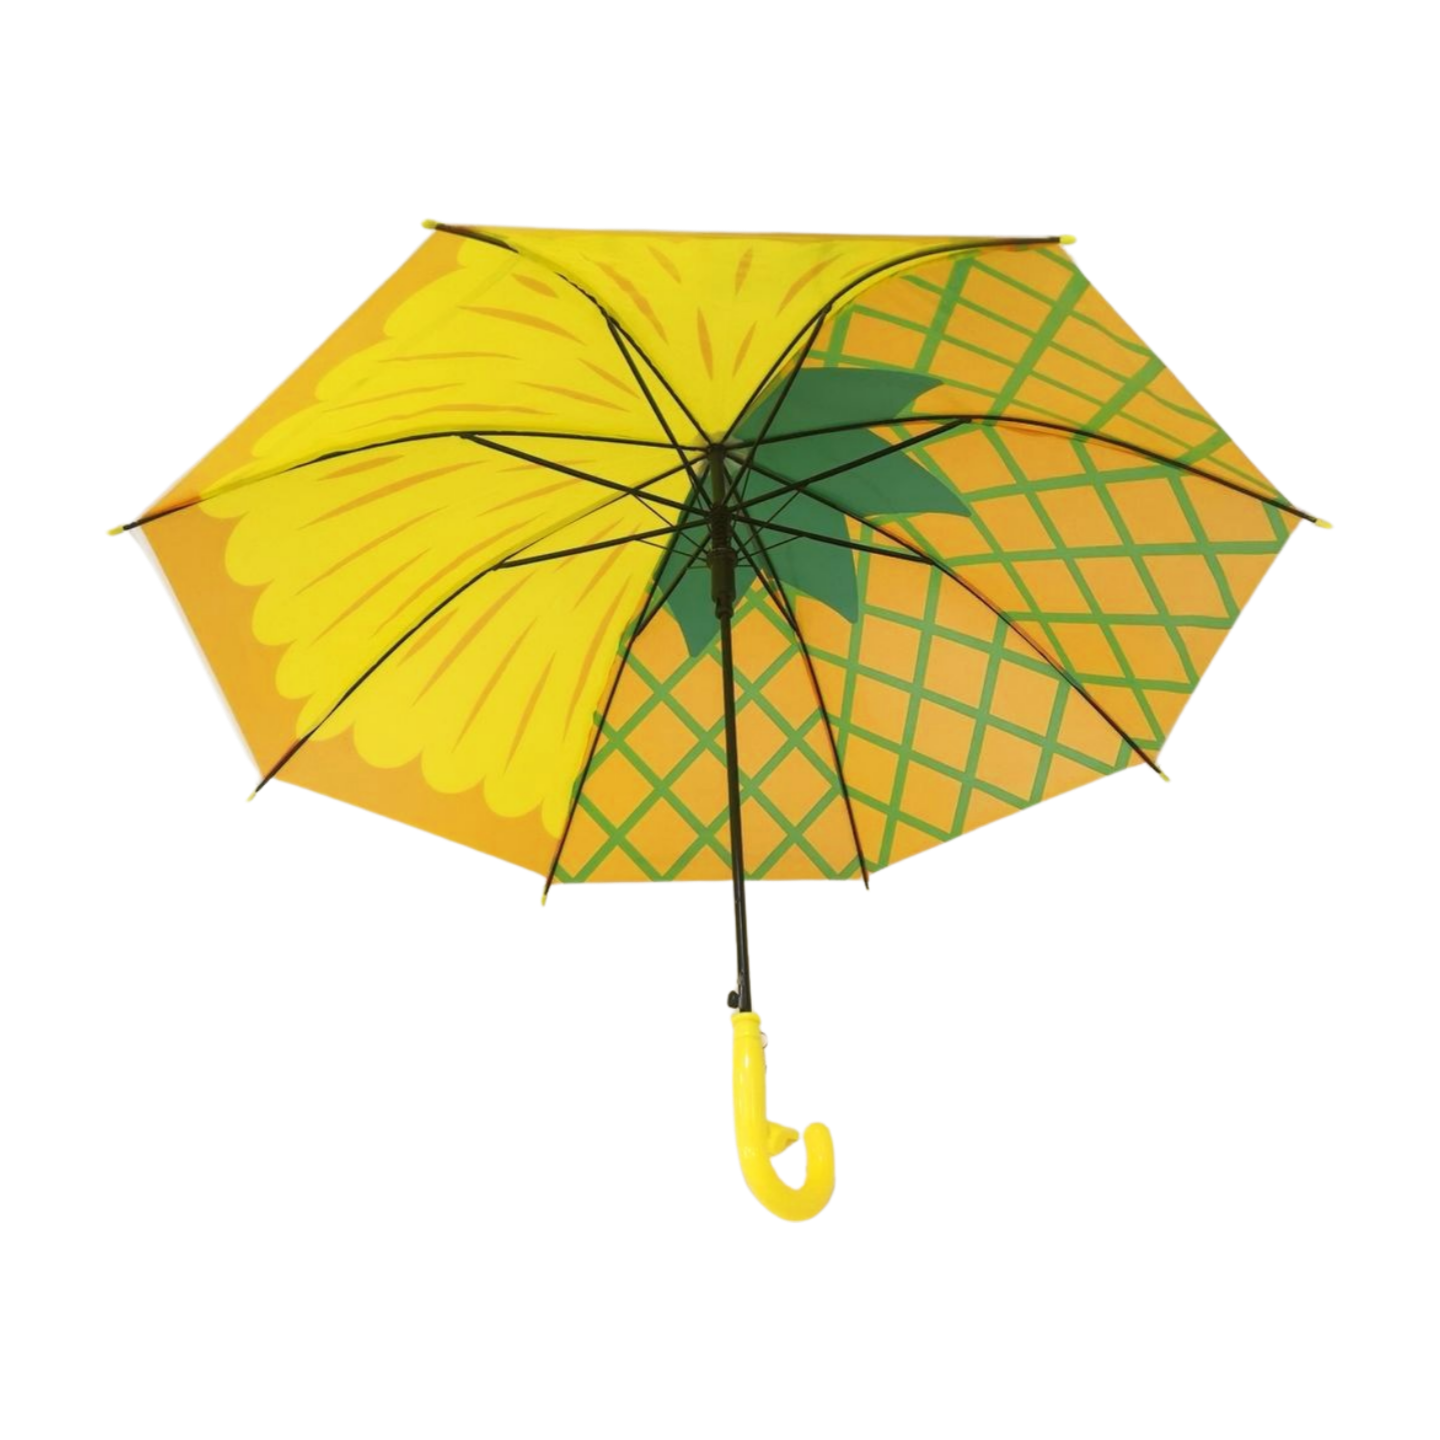 https://www.hodaumbrella.com/plastic-transp…ldren-umbrella-product/